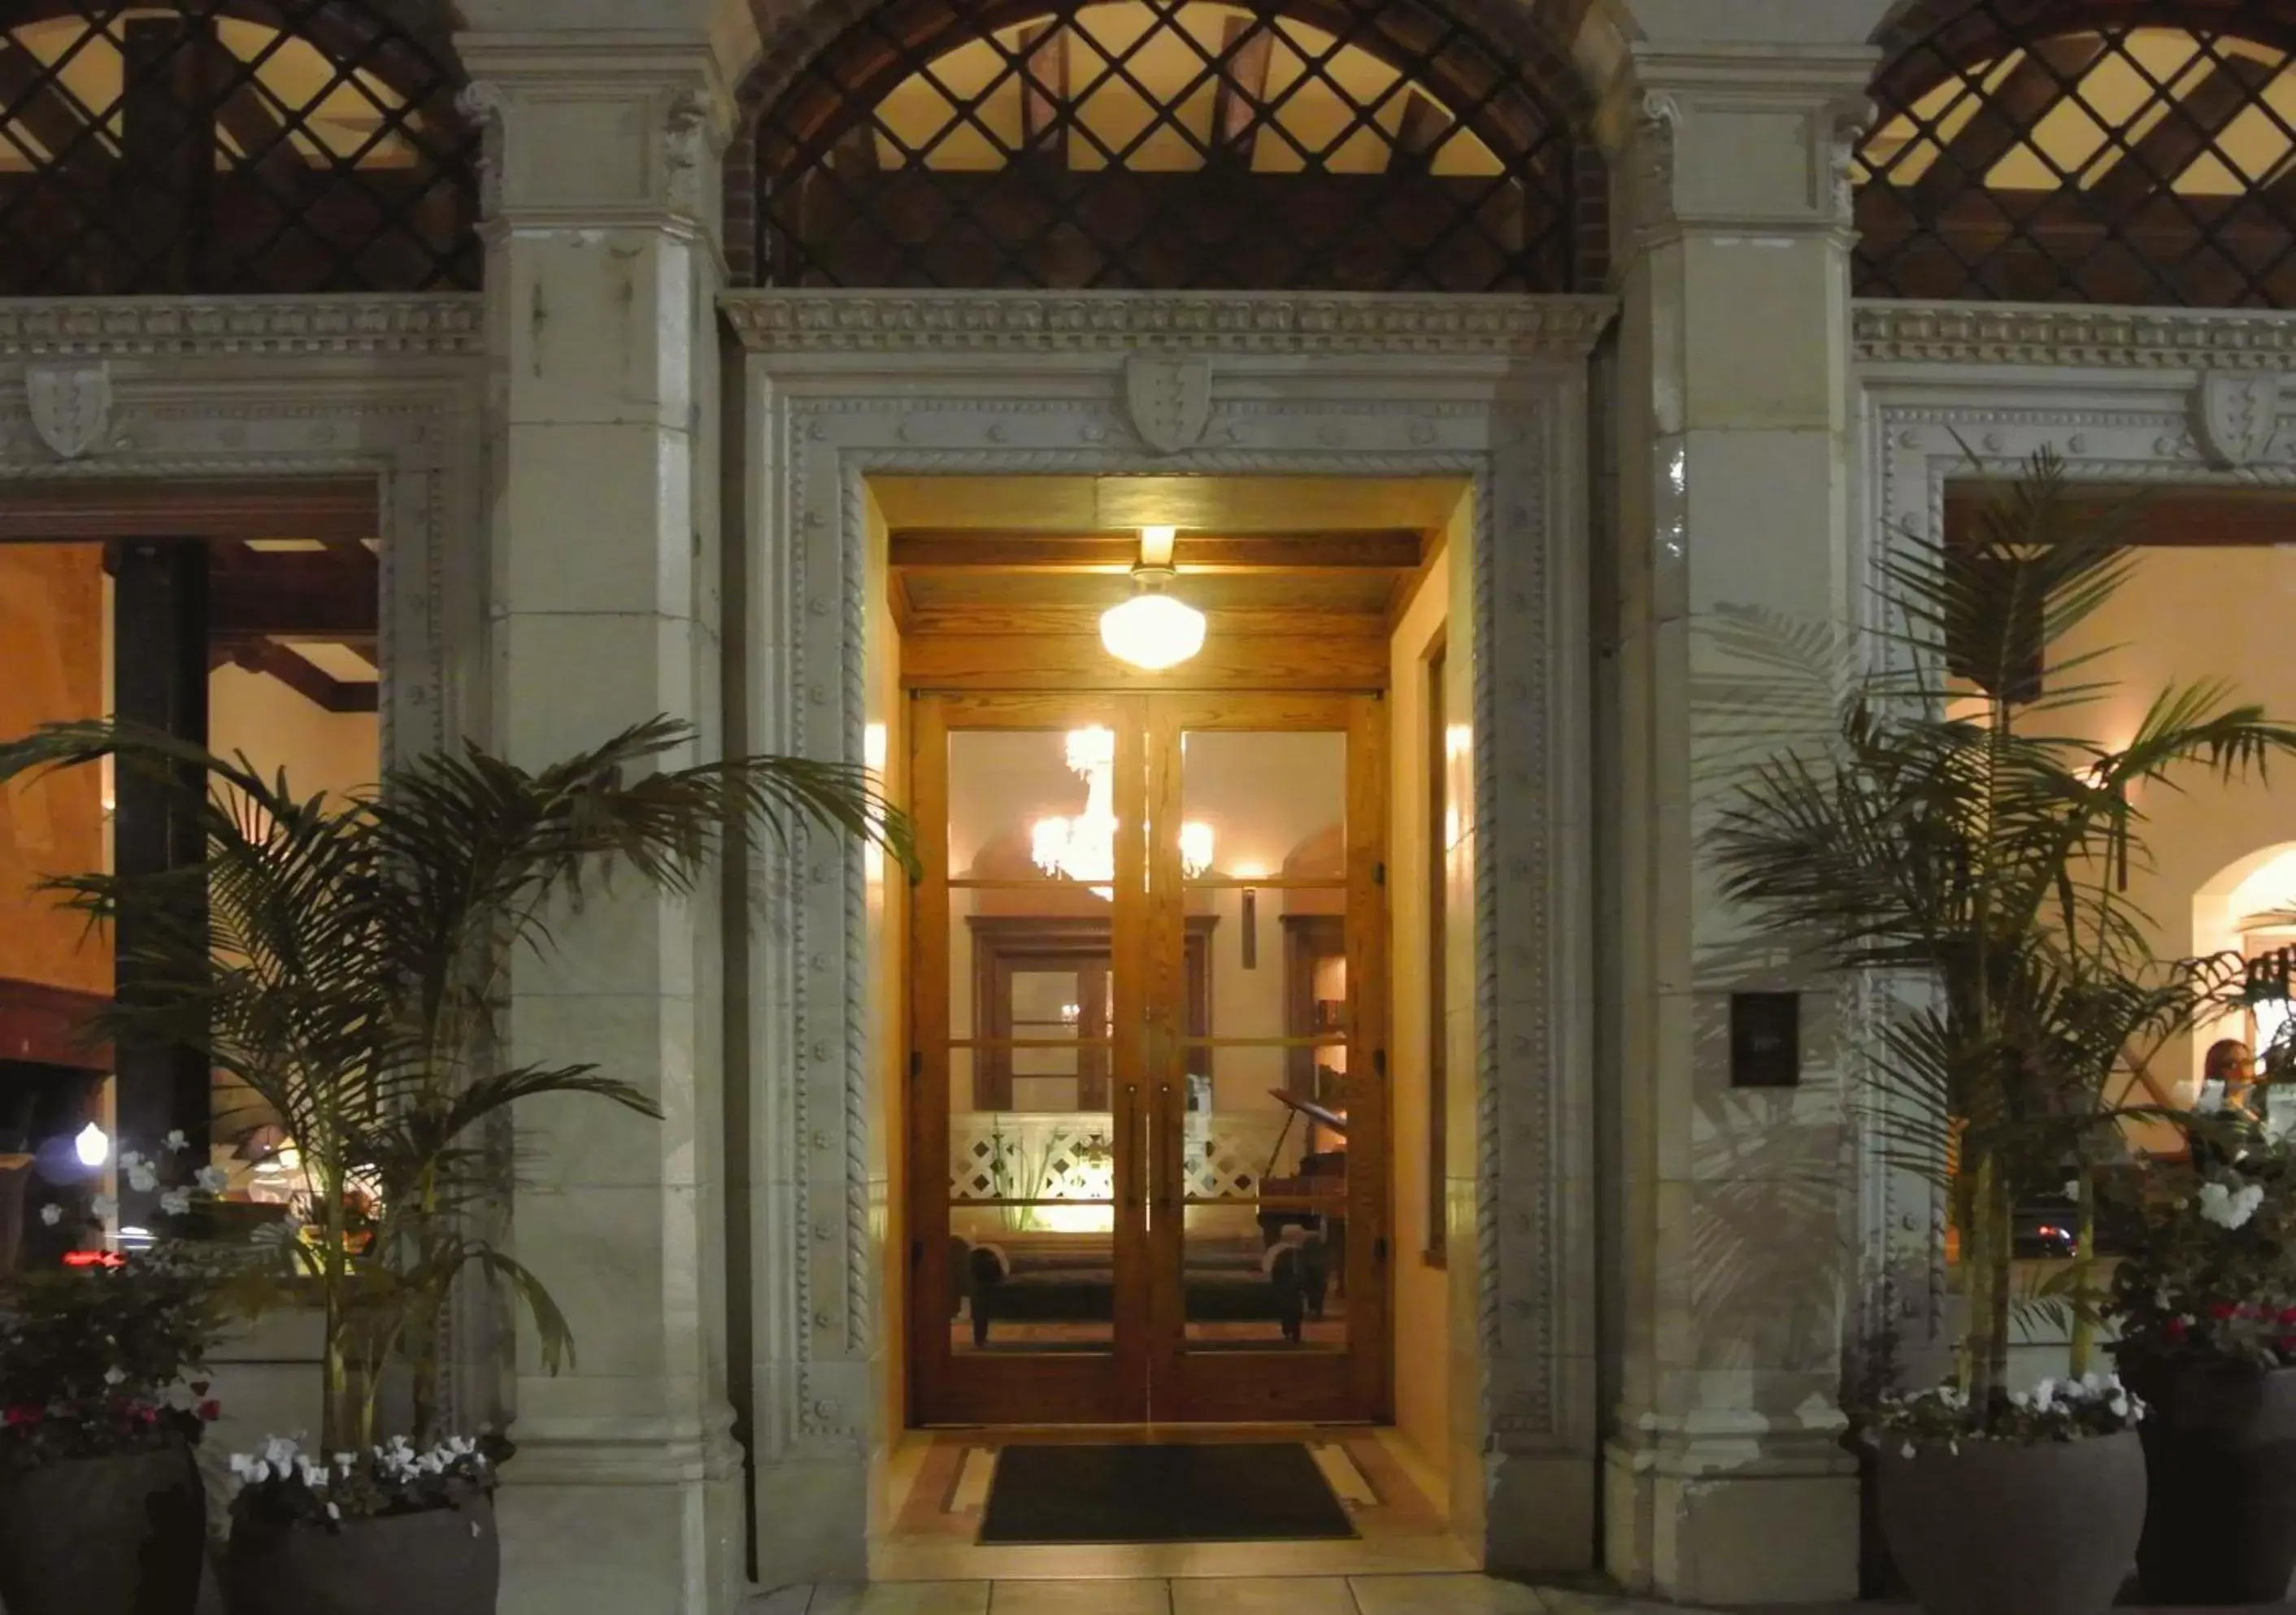 Facade/entrance in Hotel Normandie - Los Angeles